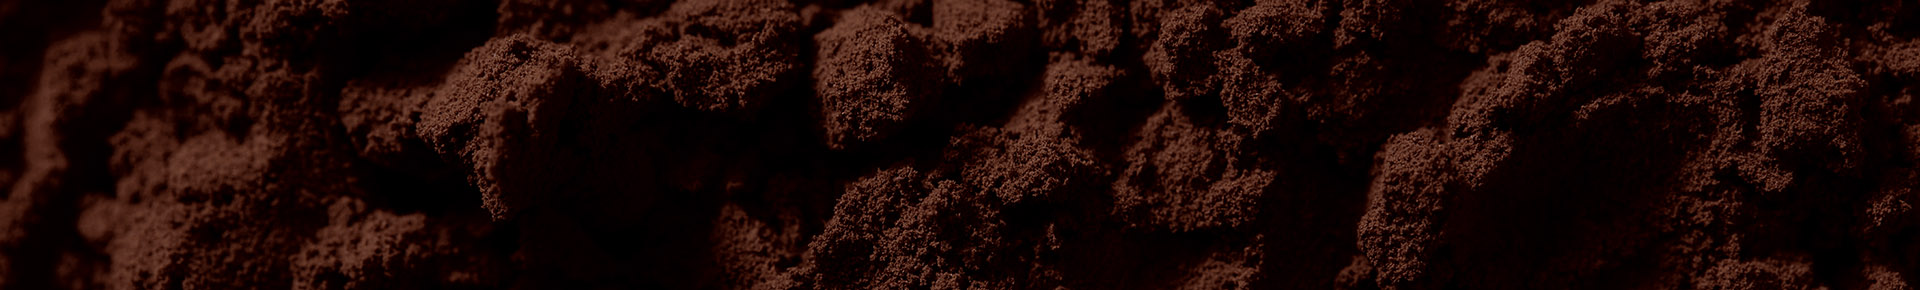 Cacao in polvere Perugina, impreziosisce i tuoi dolci capolavori